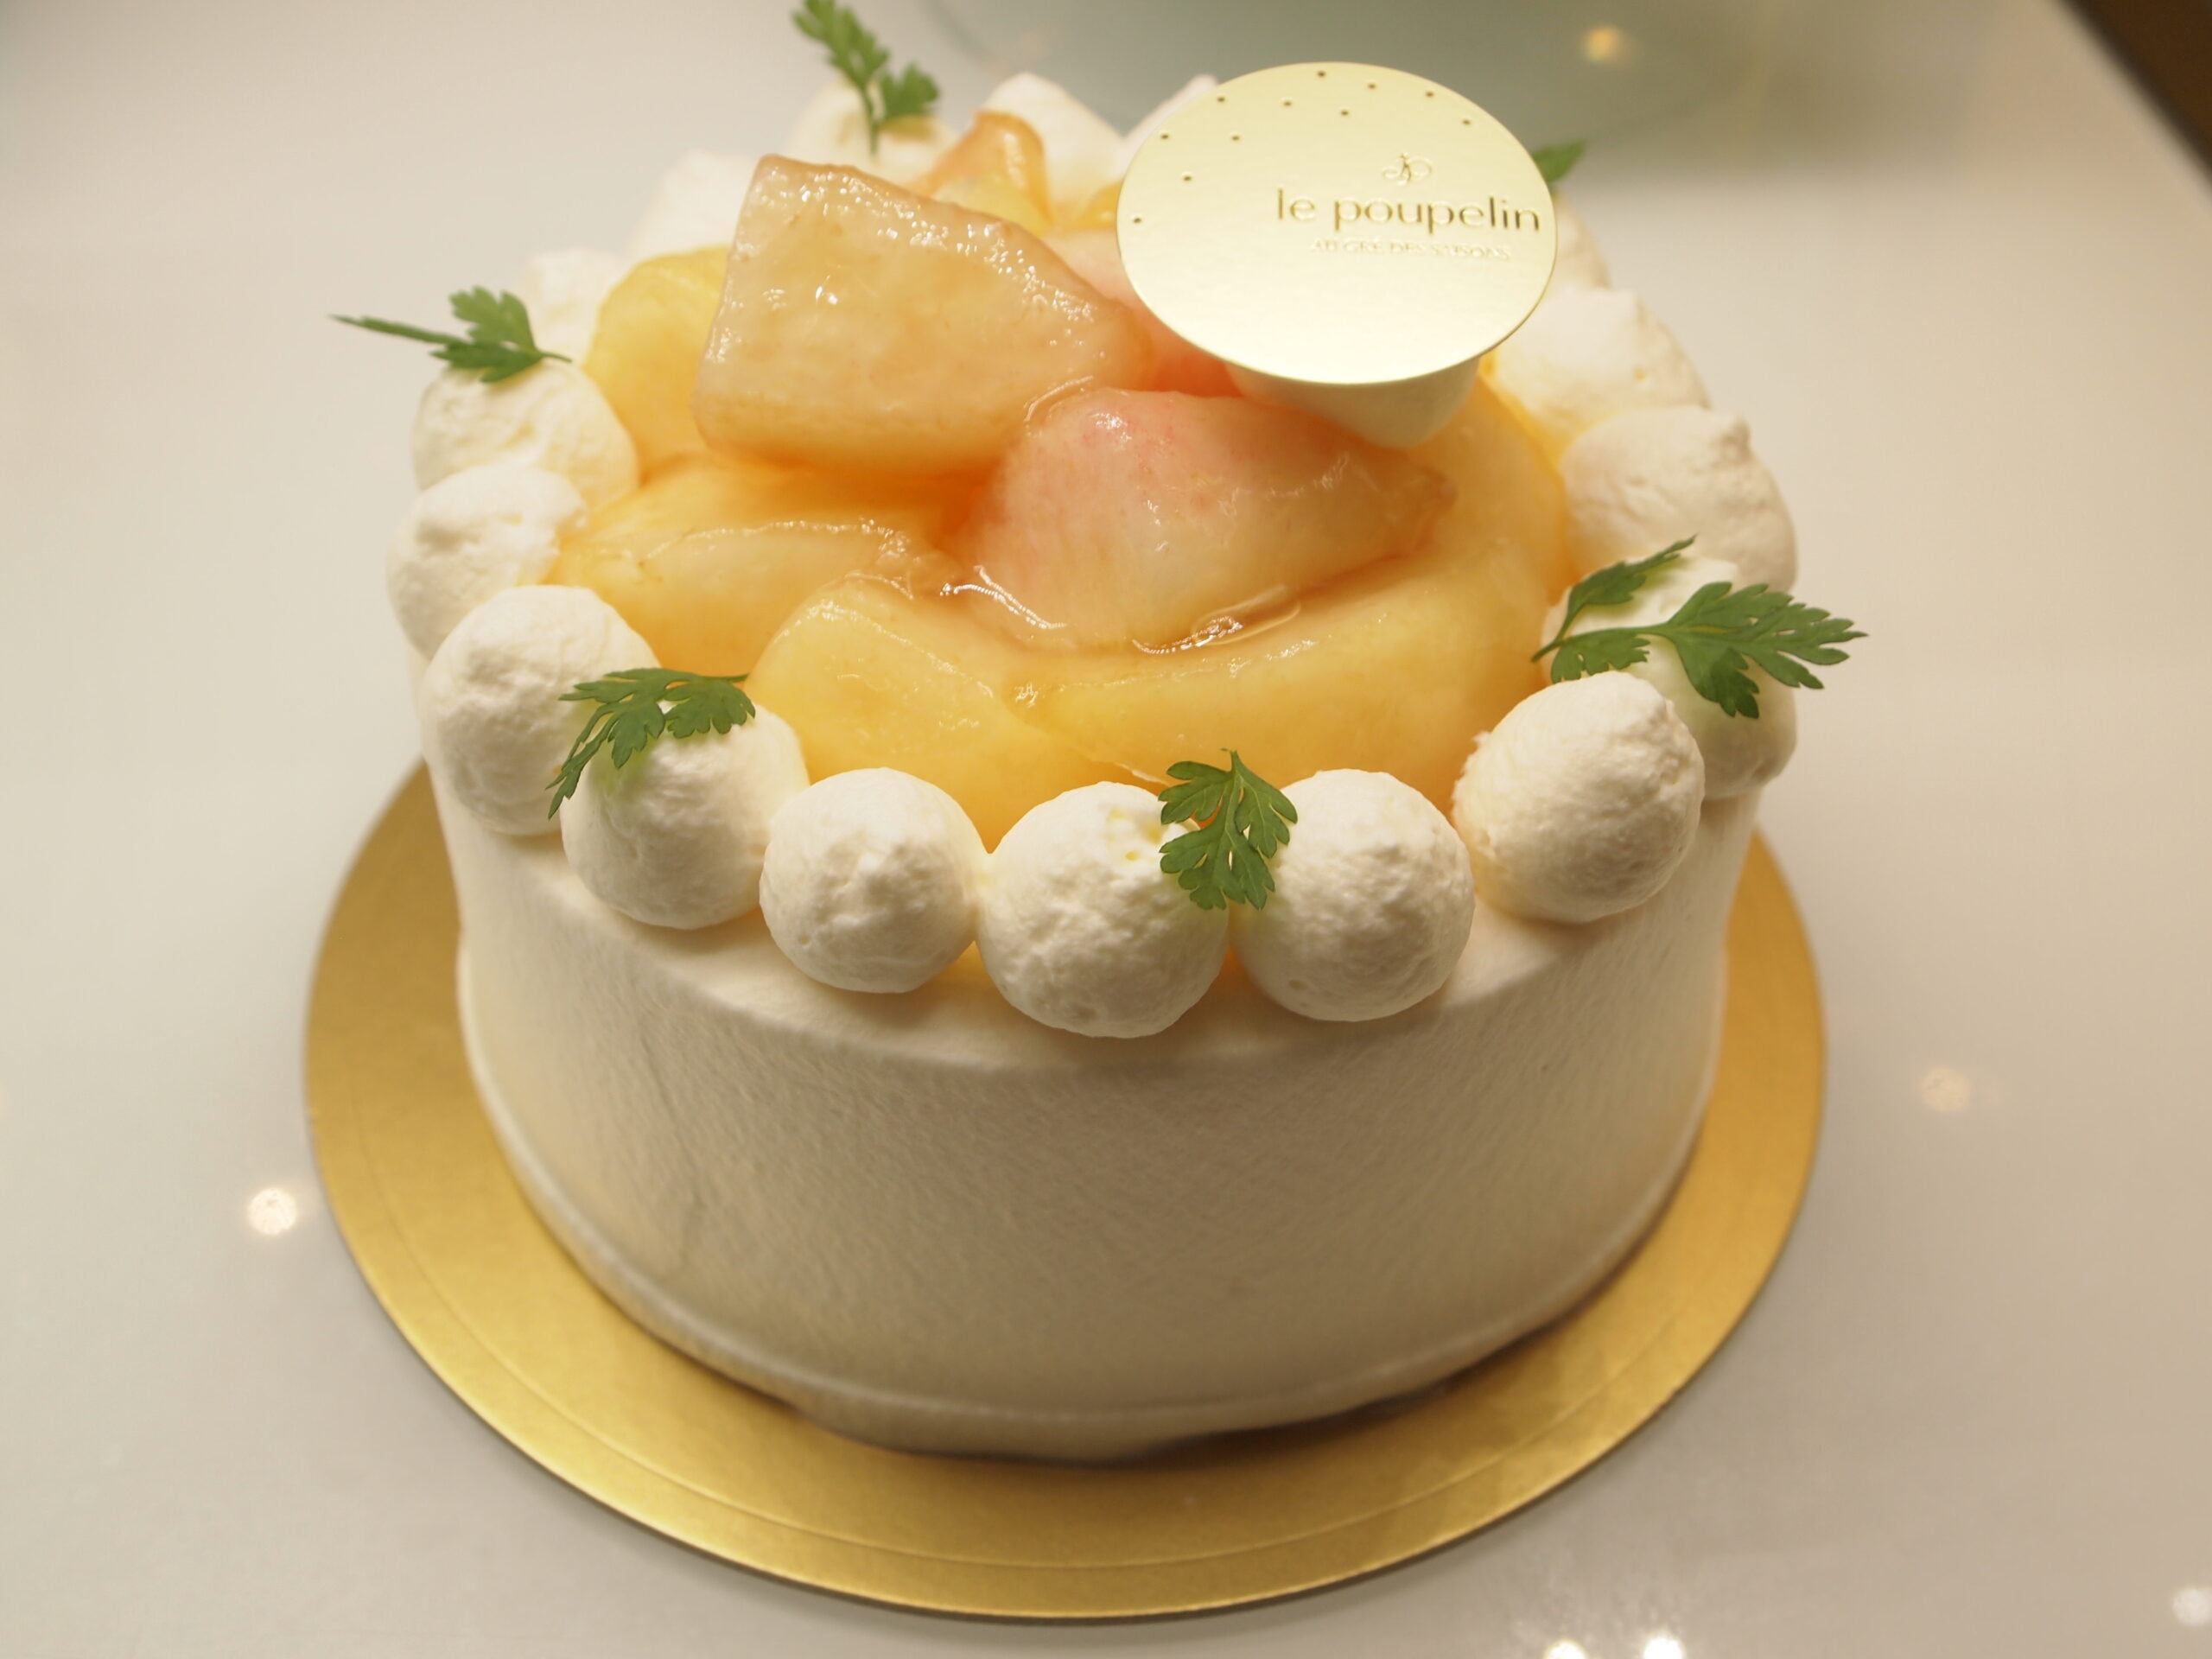 桃のデコレーションケーキ